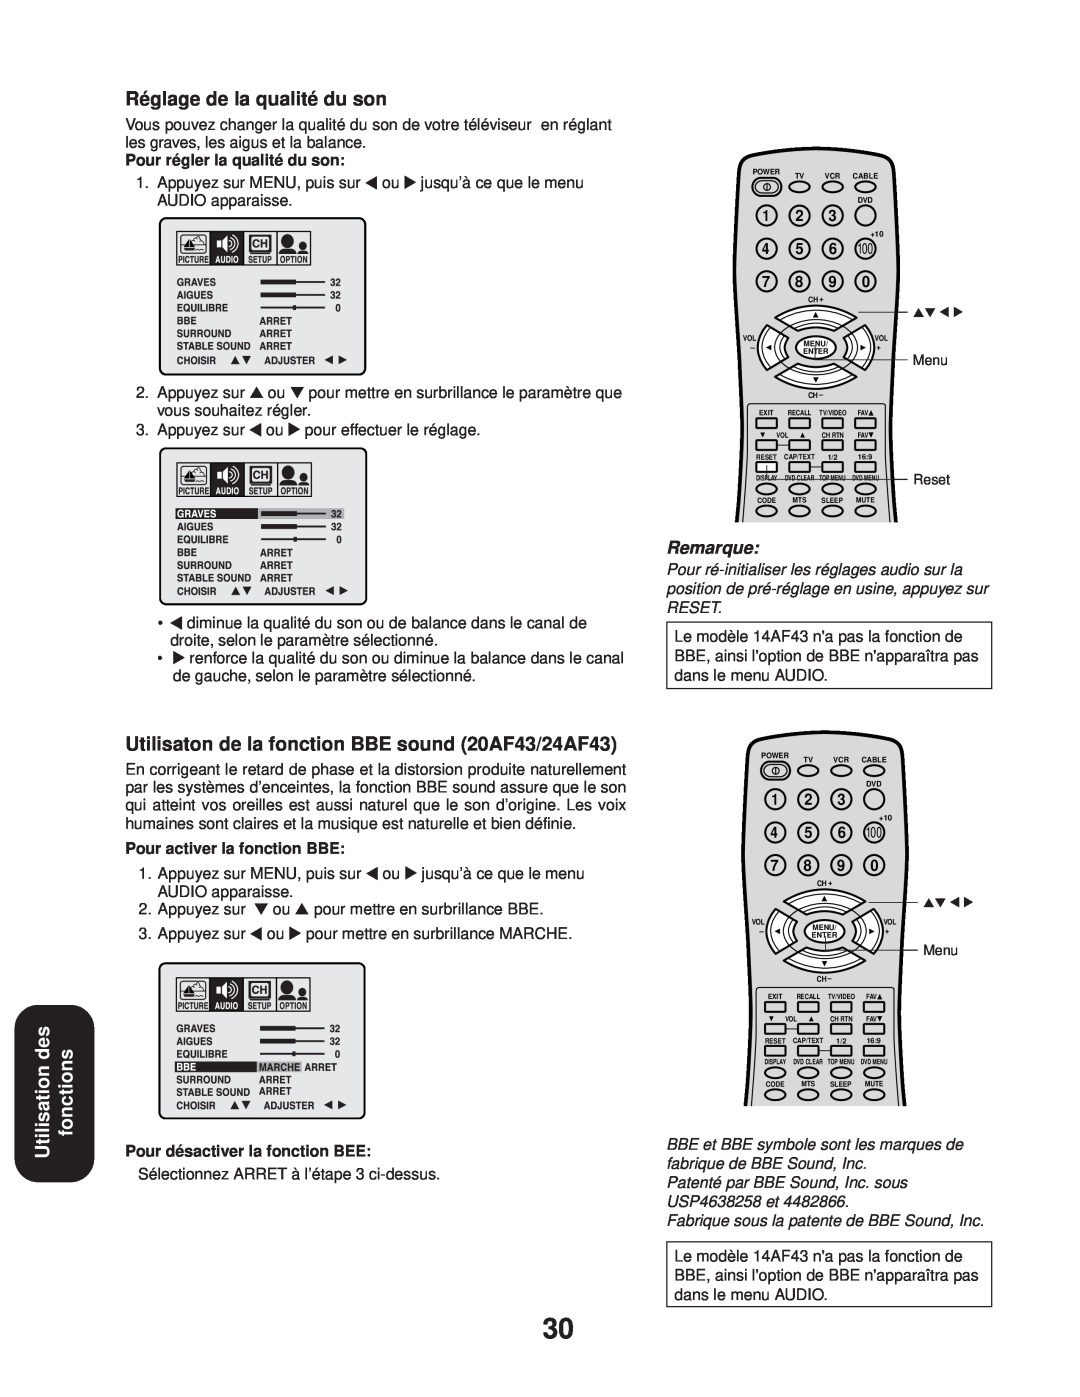 Toshiba appendix Réglage de la qualité du son, Utilisaton de la fonction BBE sound 20AF43/24AF43, Remarque, Reset 